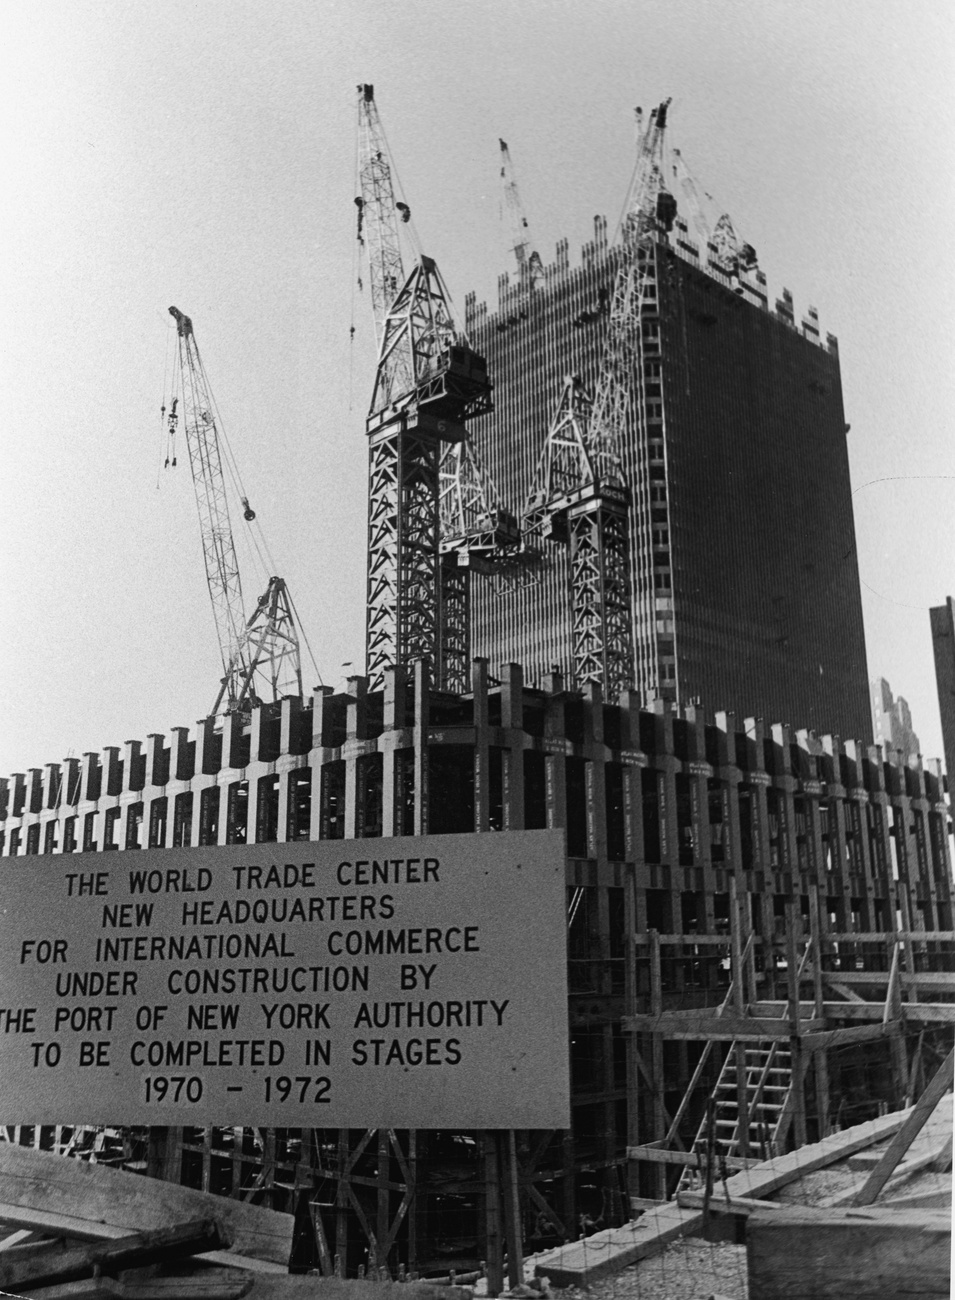 Kilátás a Freedom Tower századik emeletén. A torony várhatóan 2015-ben nyílik meg a nyilvánosság számára. 